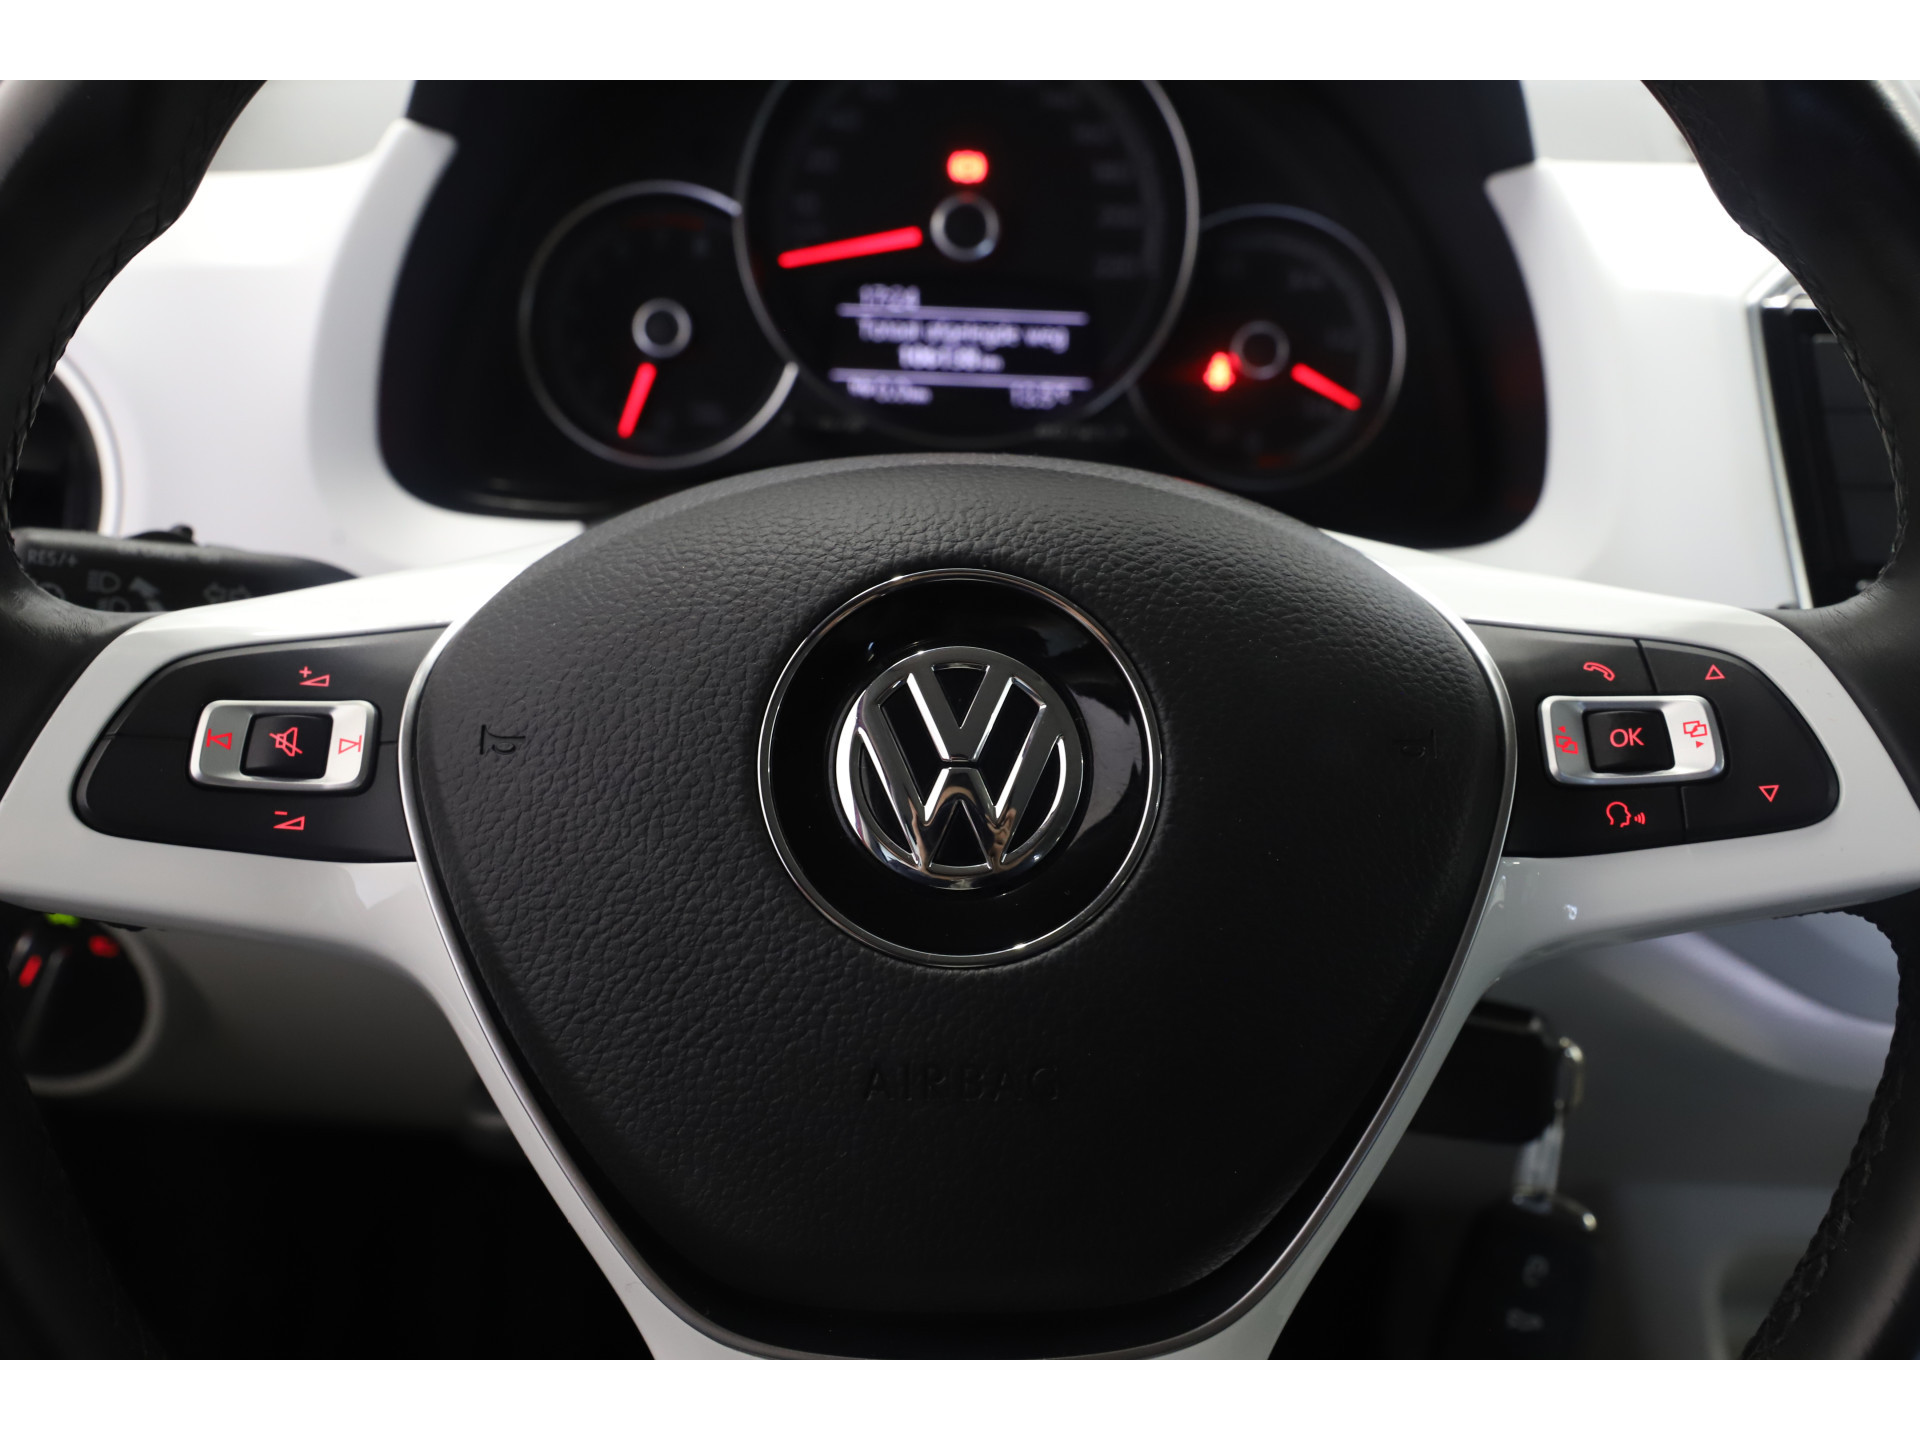 Volkswagen - up! 1.0 BMT up! beats - 2017